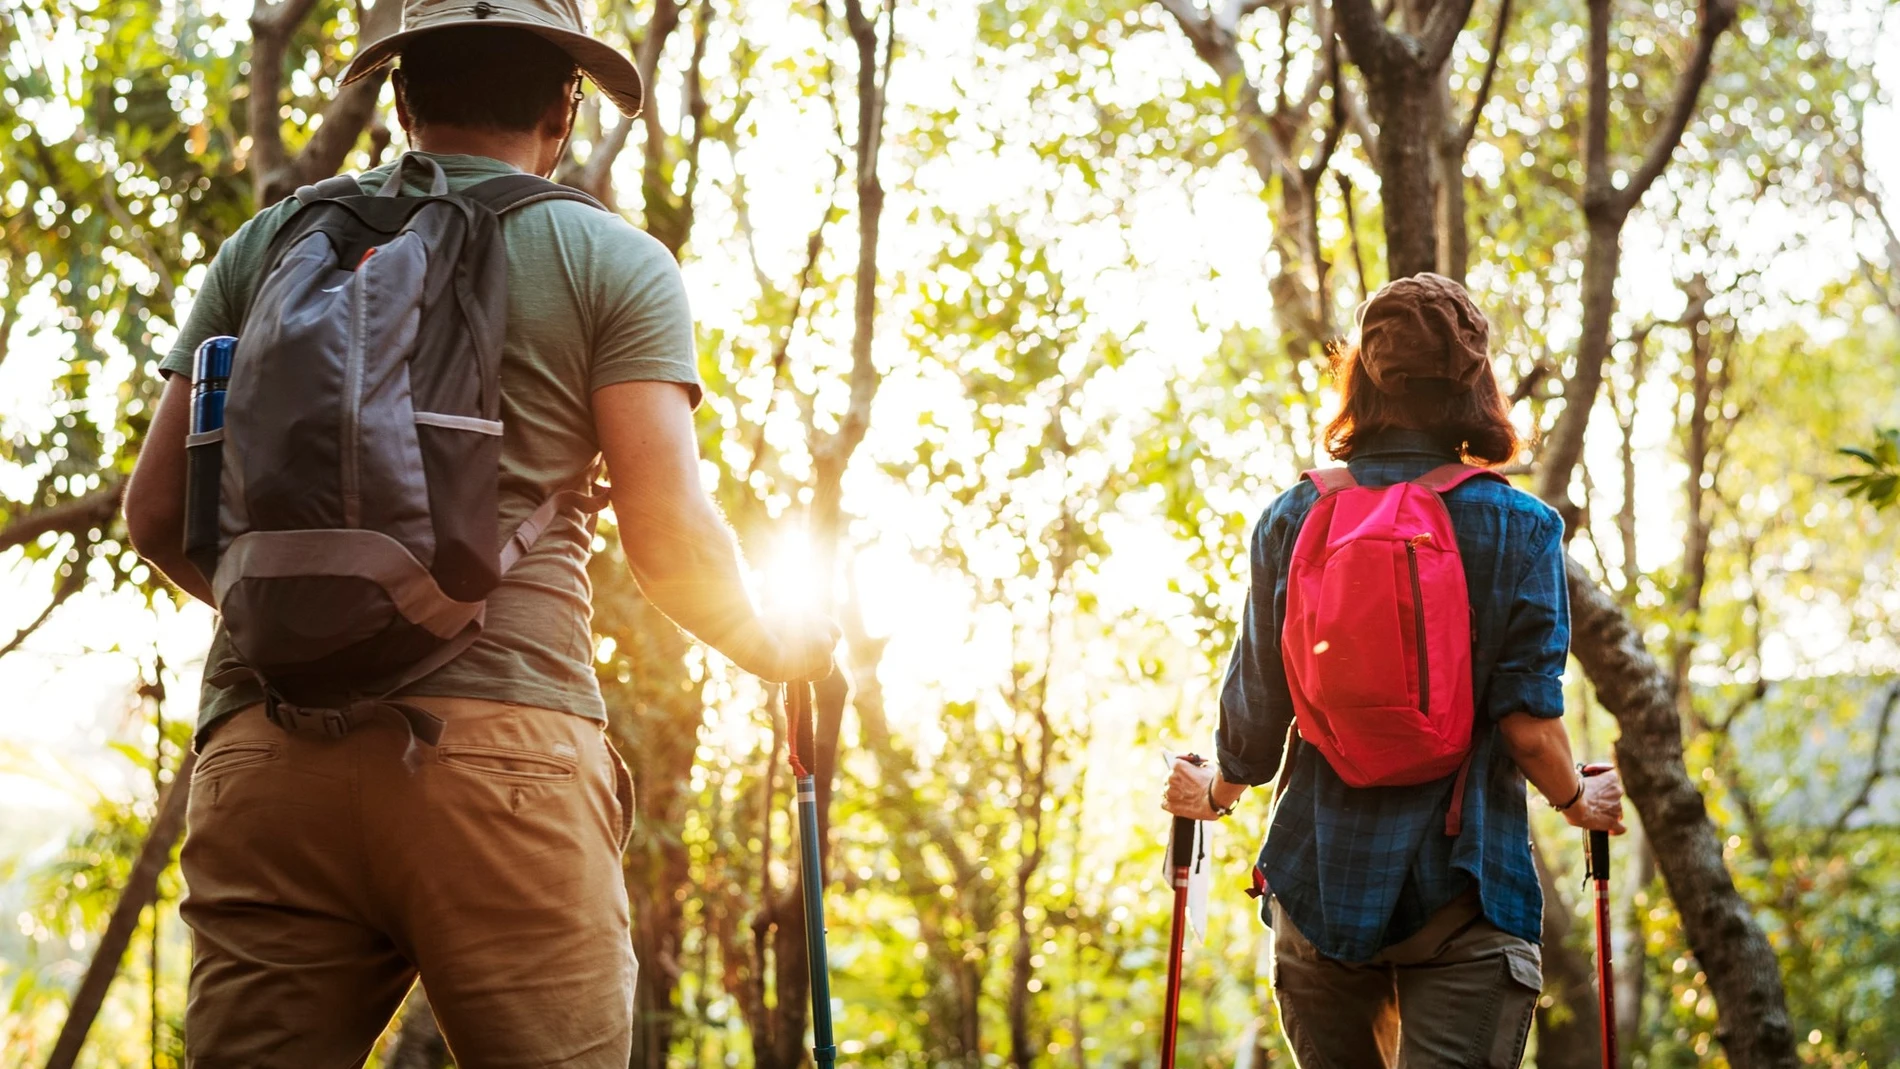 Las 10 mejores mochilas para hacer senderismo o trekking